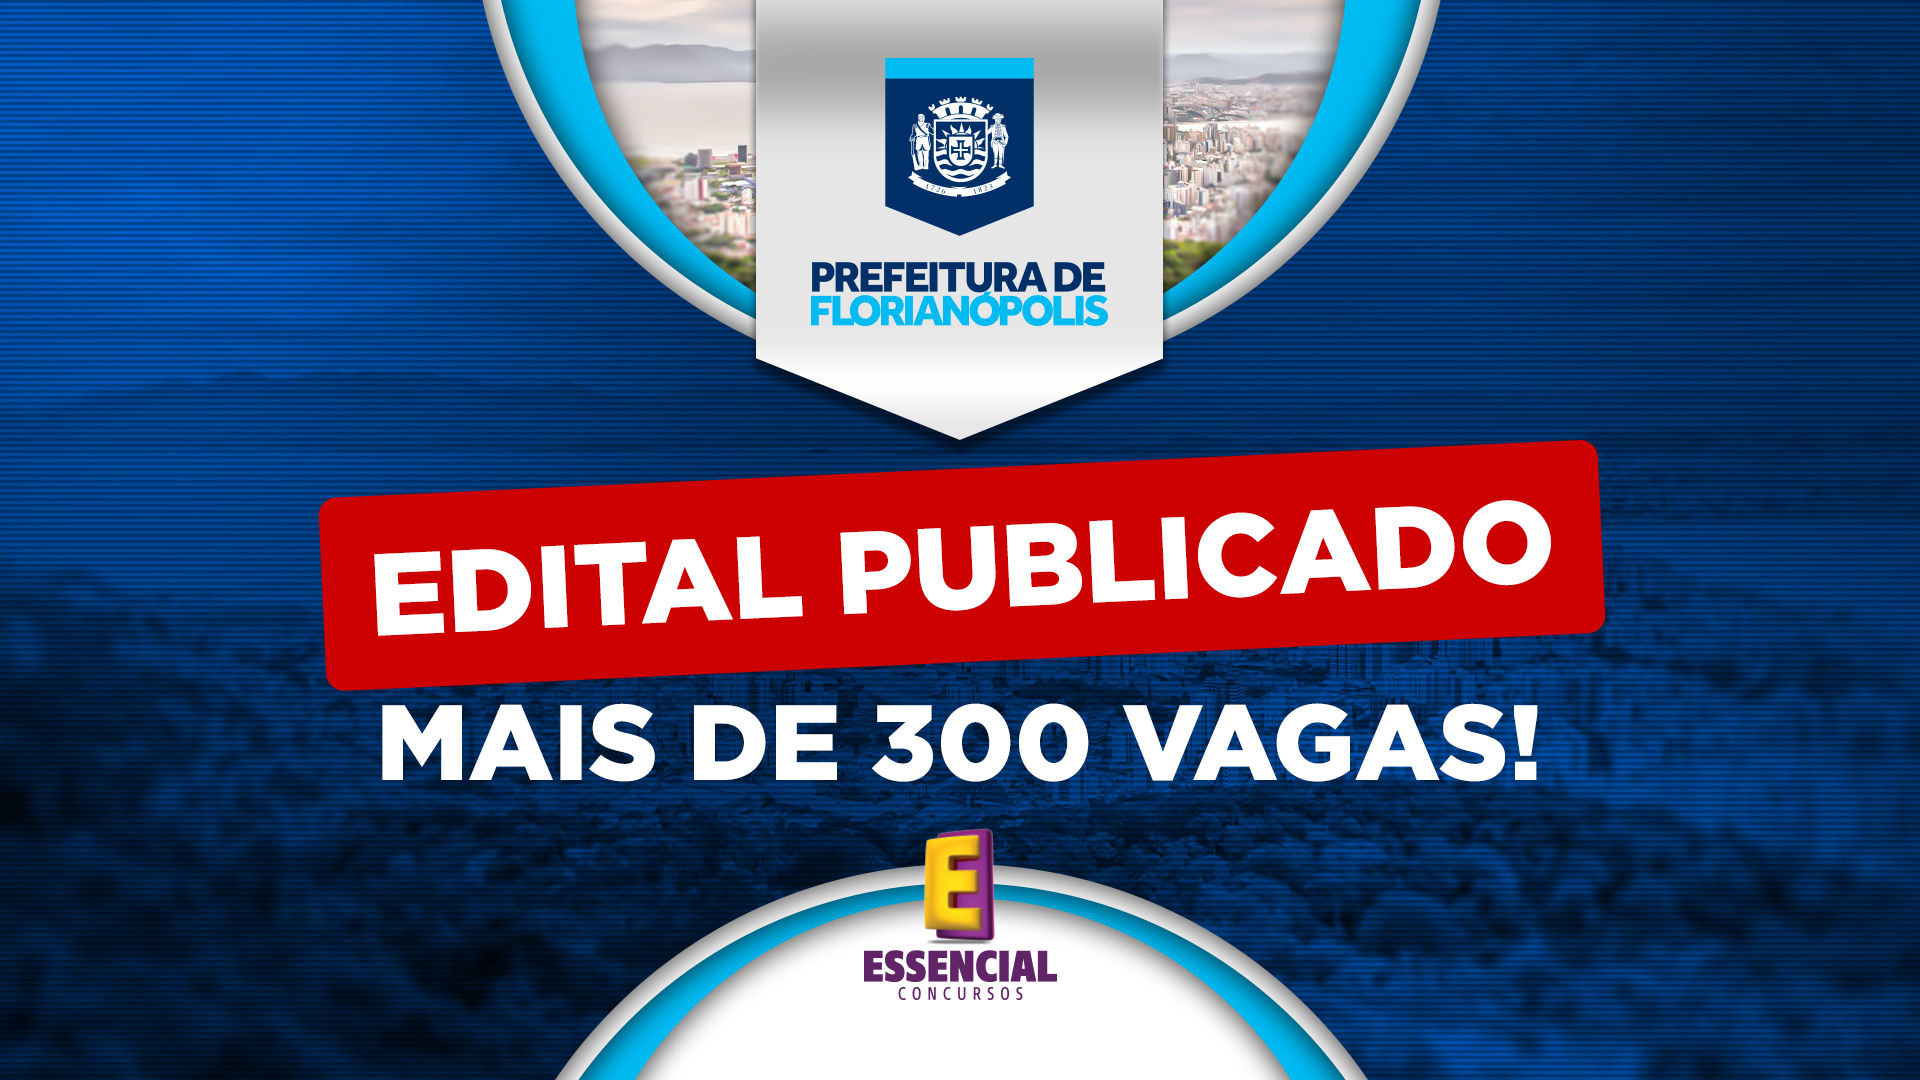 Prefeitura de Florianópolis lança edital com mais de 300 vagas!